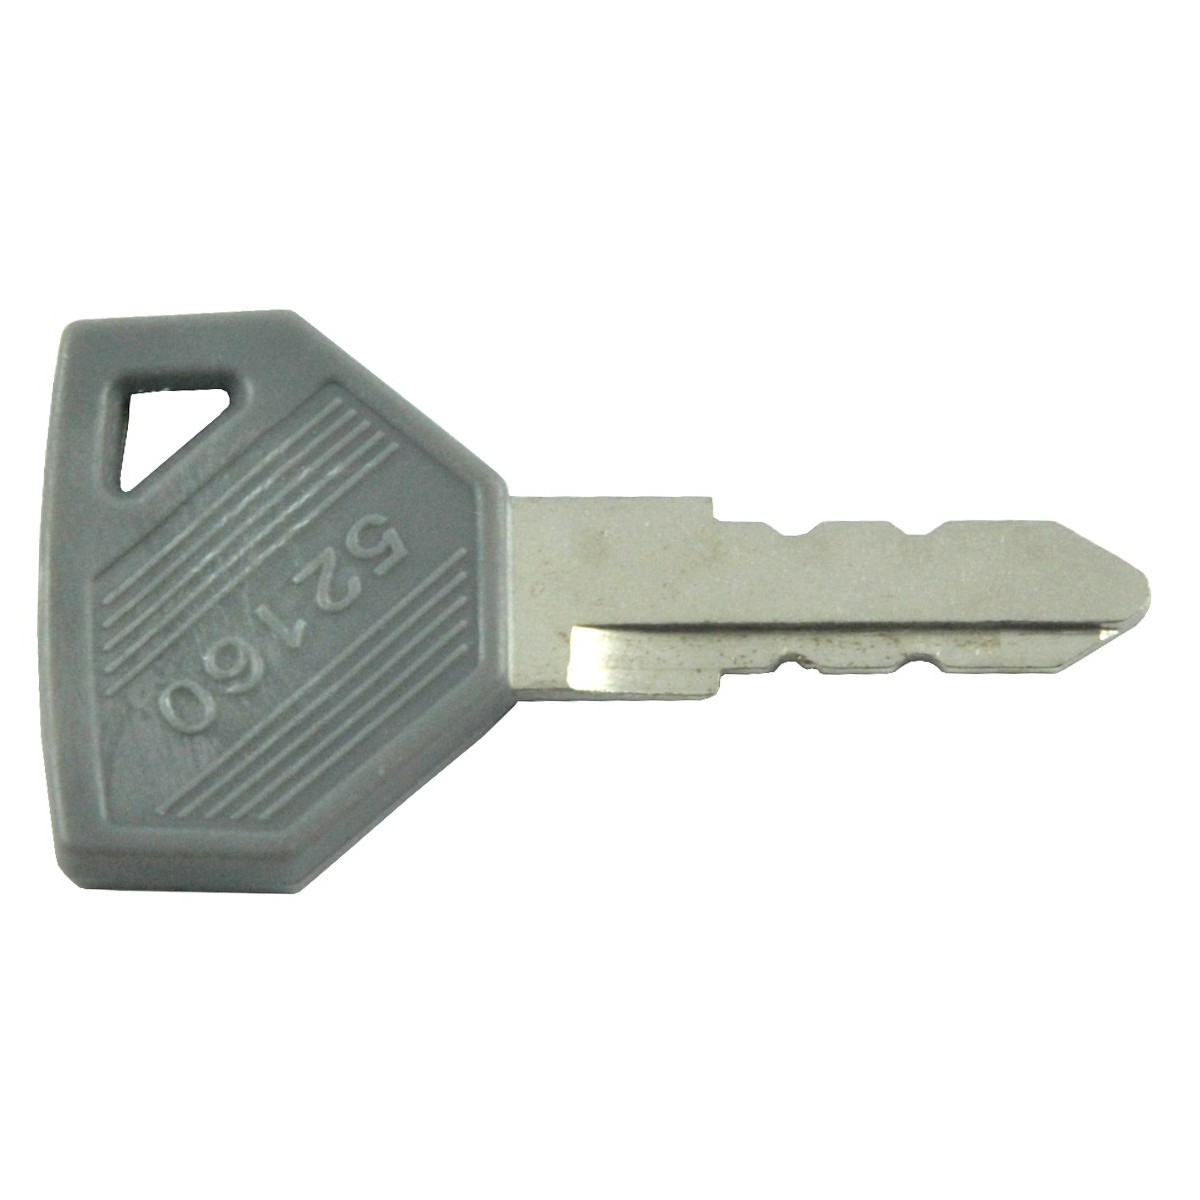 Key 52160 for Yanmar AF, F, FX, Ke-3, Ke-2 ignition